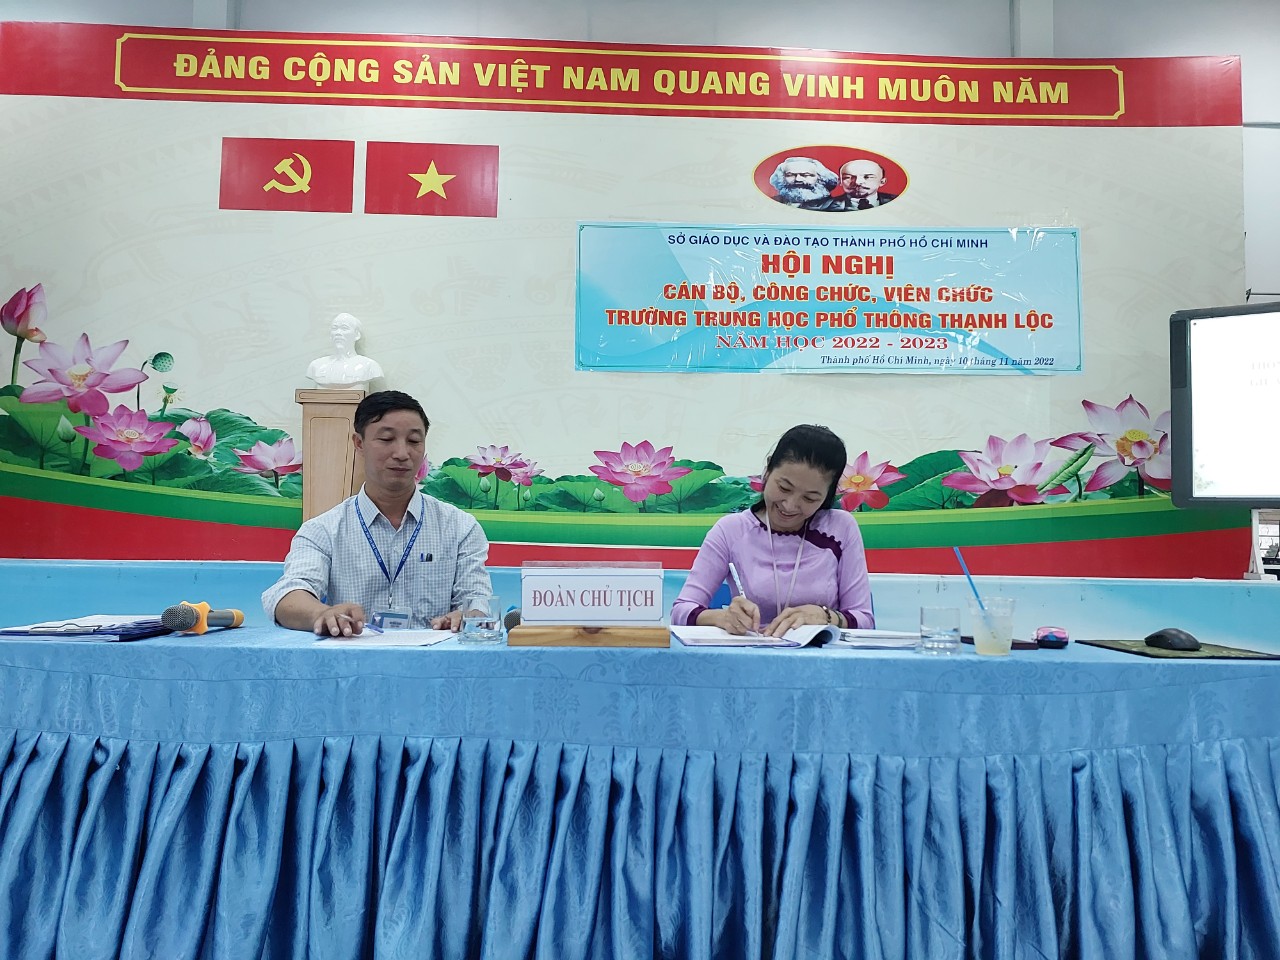 Chủ trì hội nghị: cô Phạm Thị Bình- bí thư chi bộ, hiệu trưởng nhà trường và thầy Vũ Văn Tuấn, chủ tịch công đoàn nhà trường